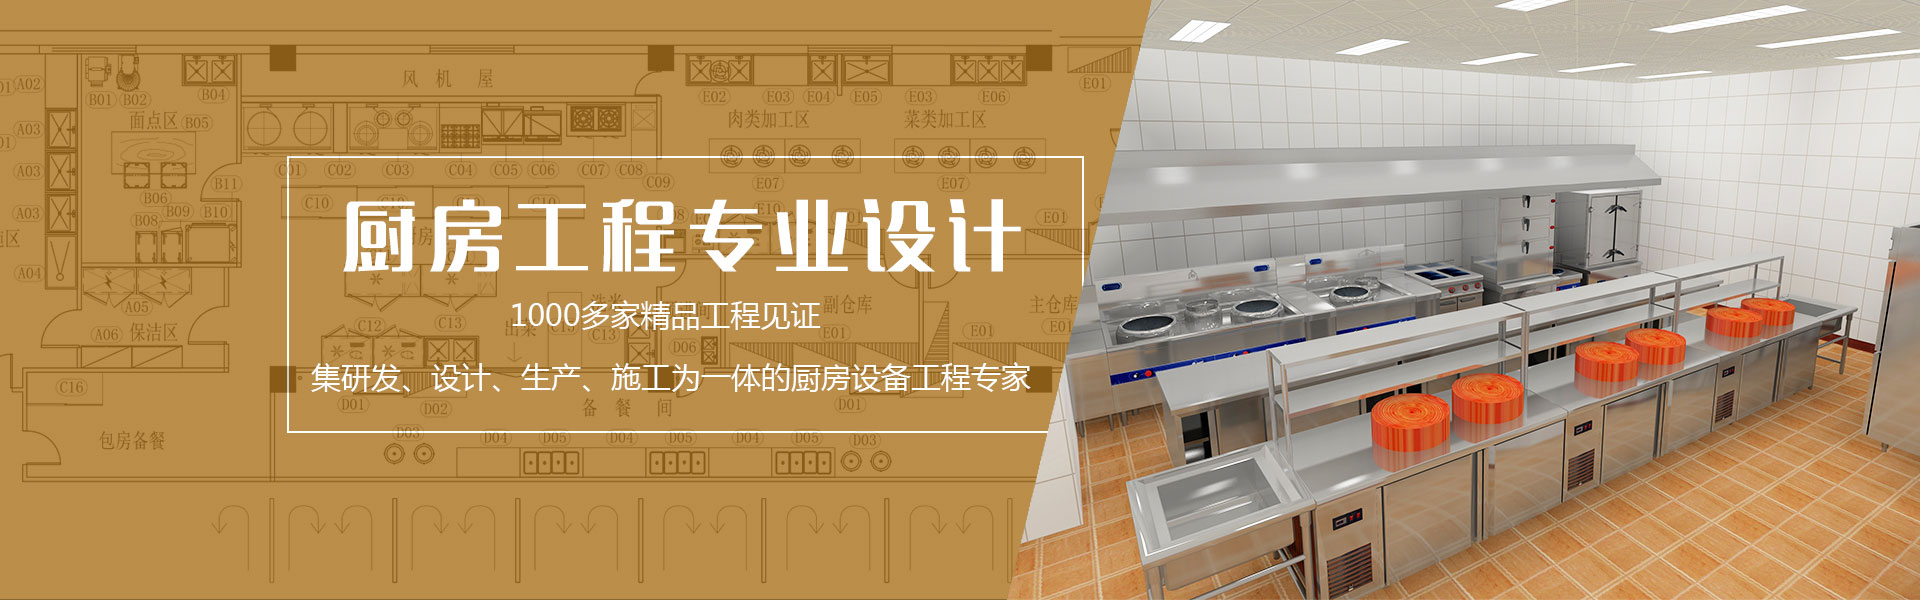 广州厨房设备